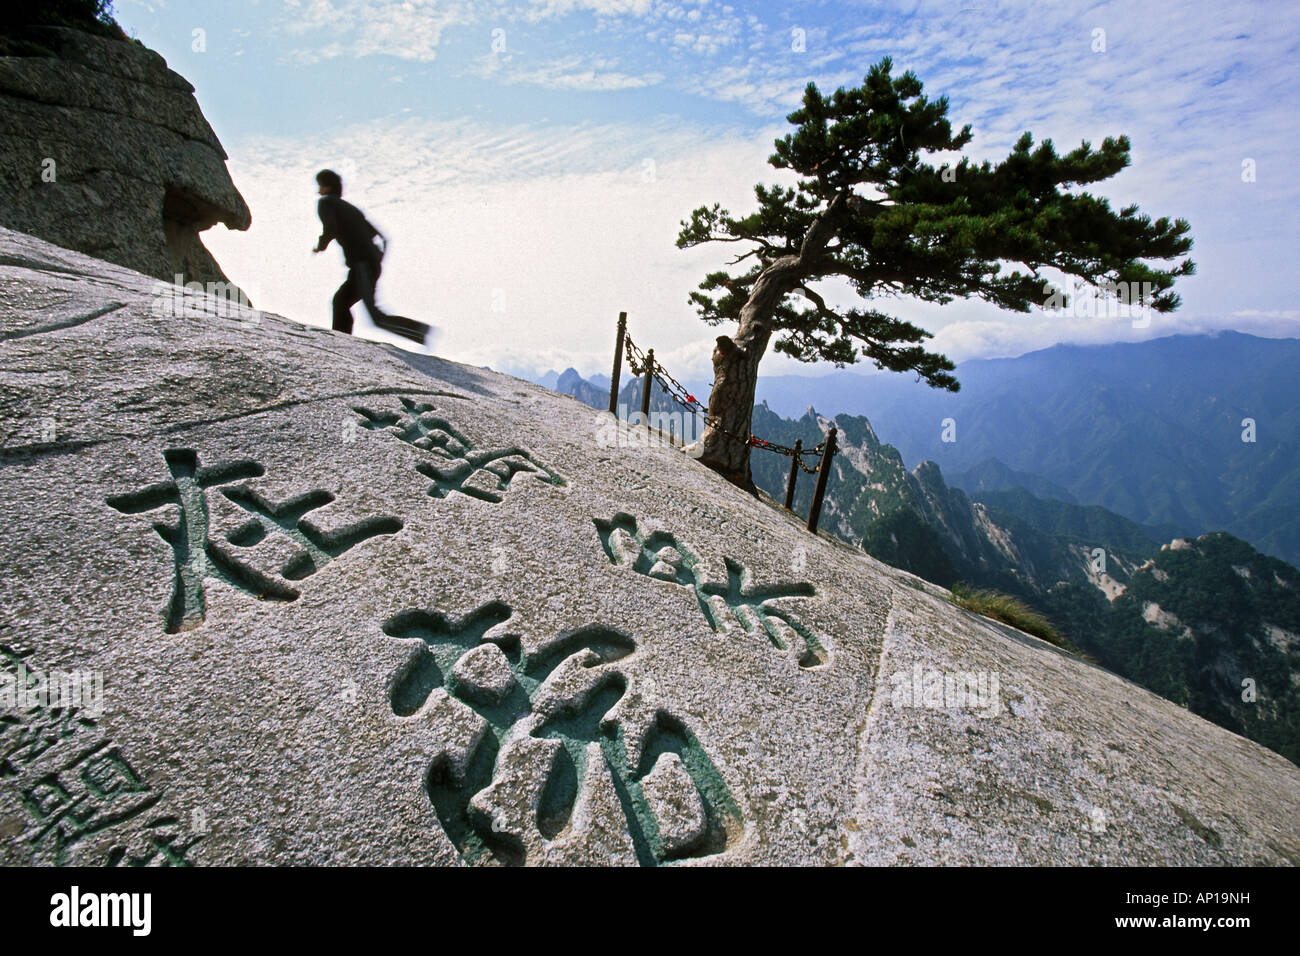 A sud di picco, pino, i caratteri cinesi incisi nella pietra, a sud di picco, Hua Shan, provincia di Shaanxi, taoista di montagna, Cina, ASI Foto Stock